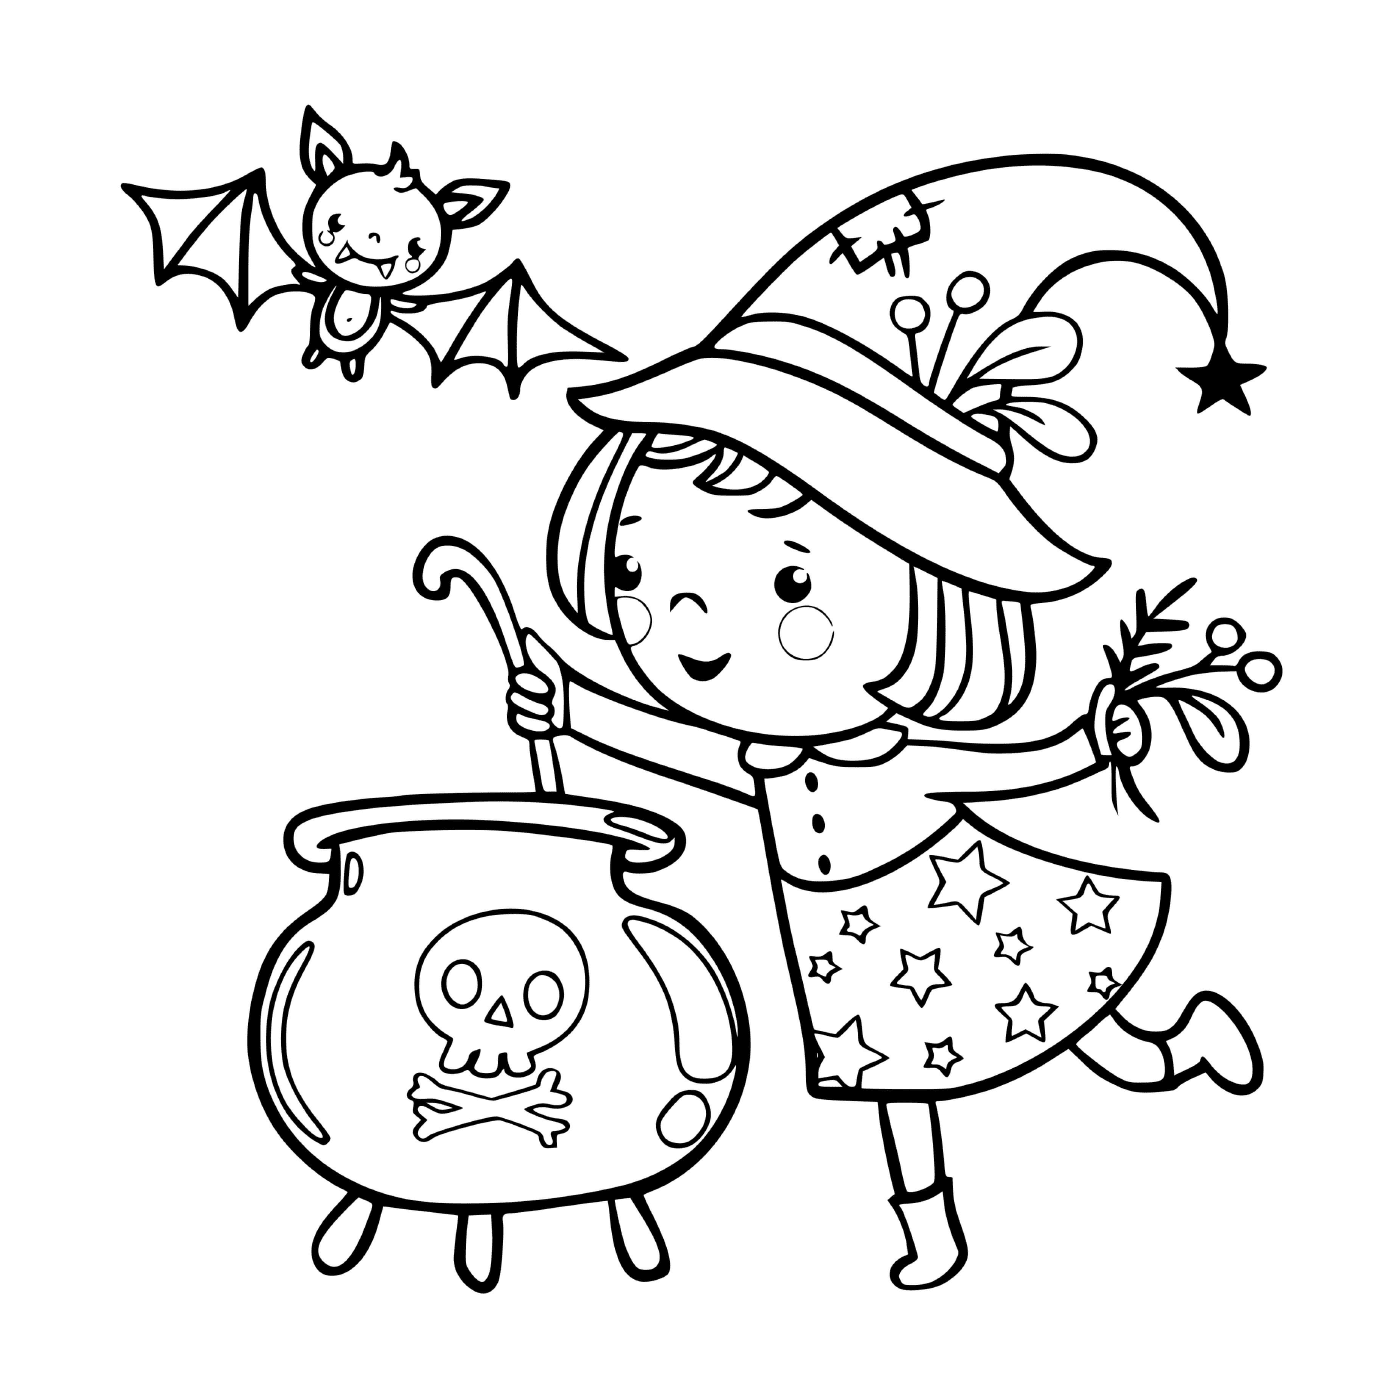   Petite sorcière prépare une soupe magique 